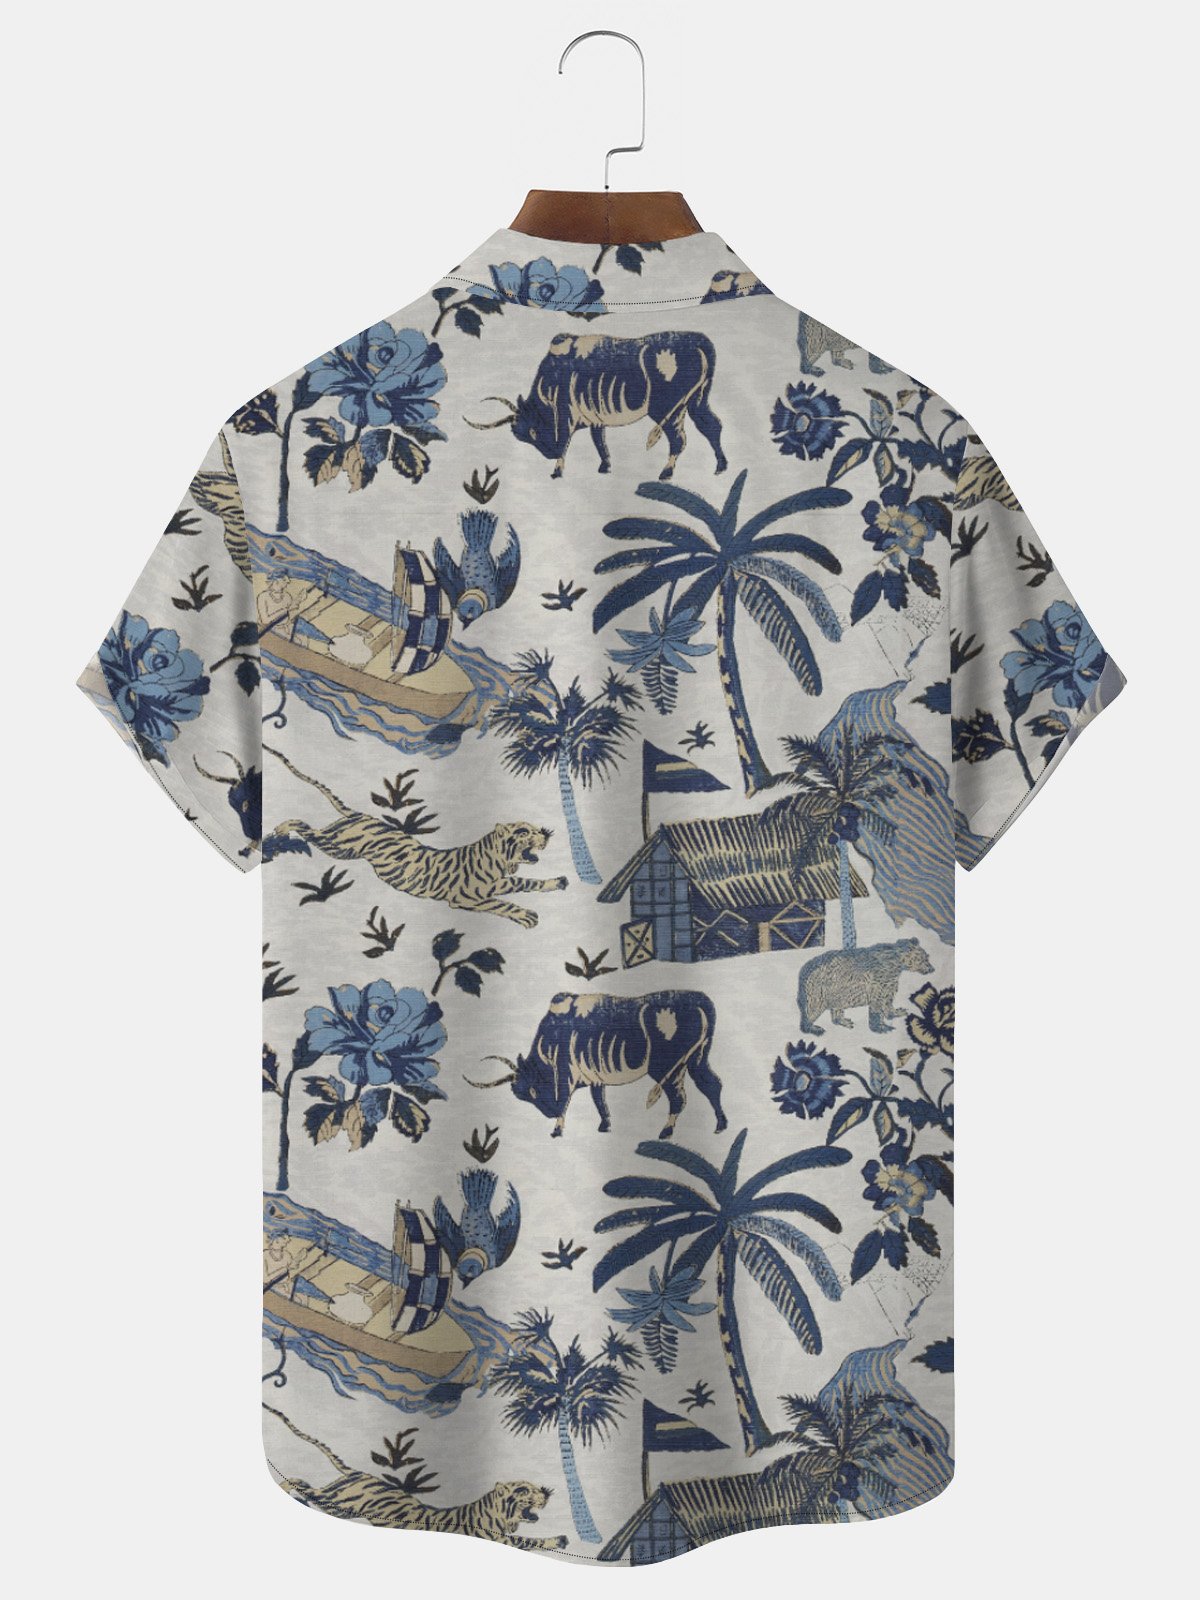 Royaura Beach Vacation Vintage Men's Hawaiian Shirt Coconut Tree Tiger Cartoon Stretch Aloha Camp Pocket Shirts